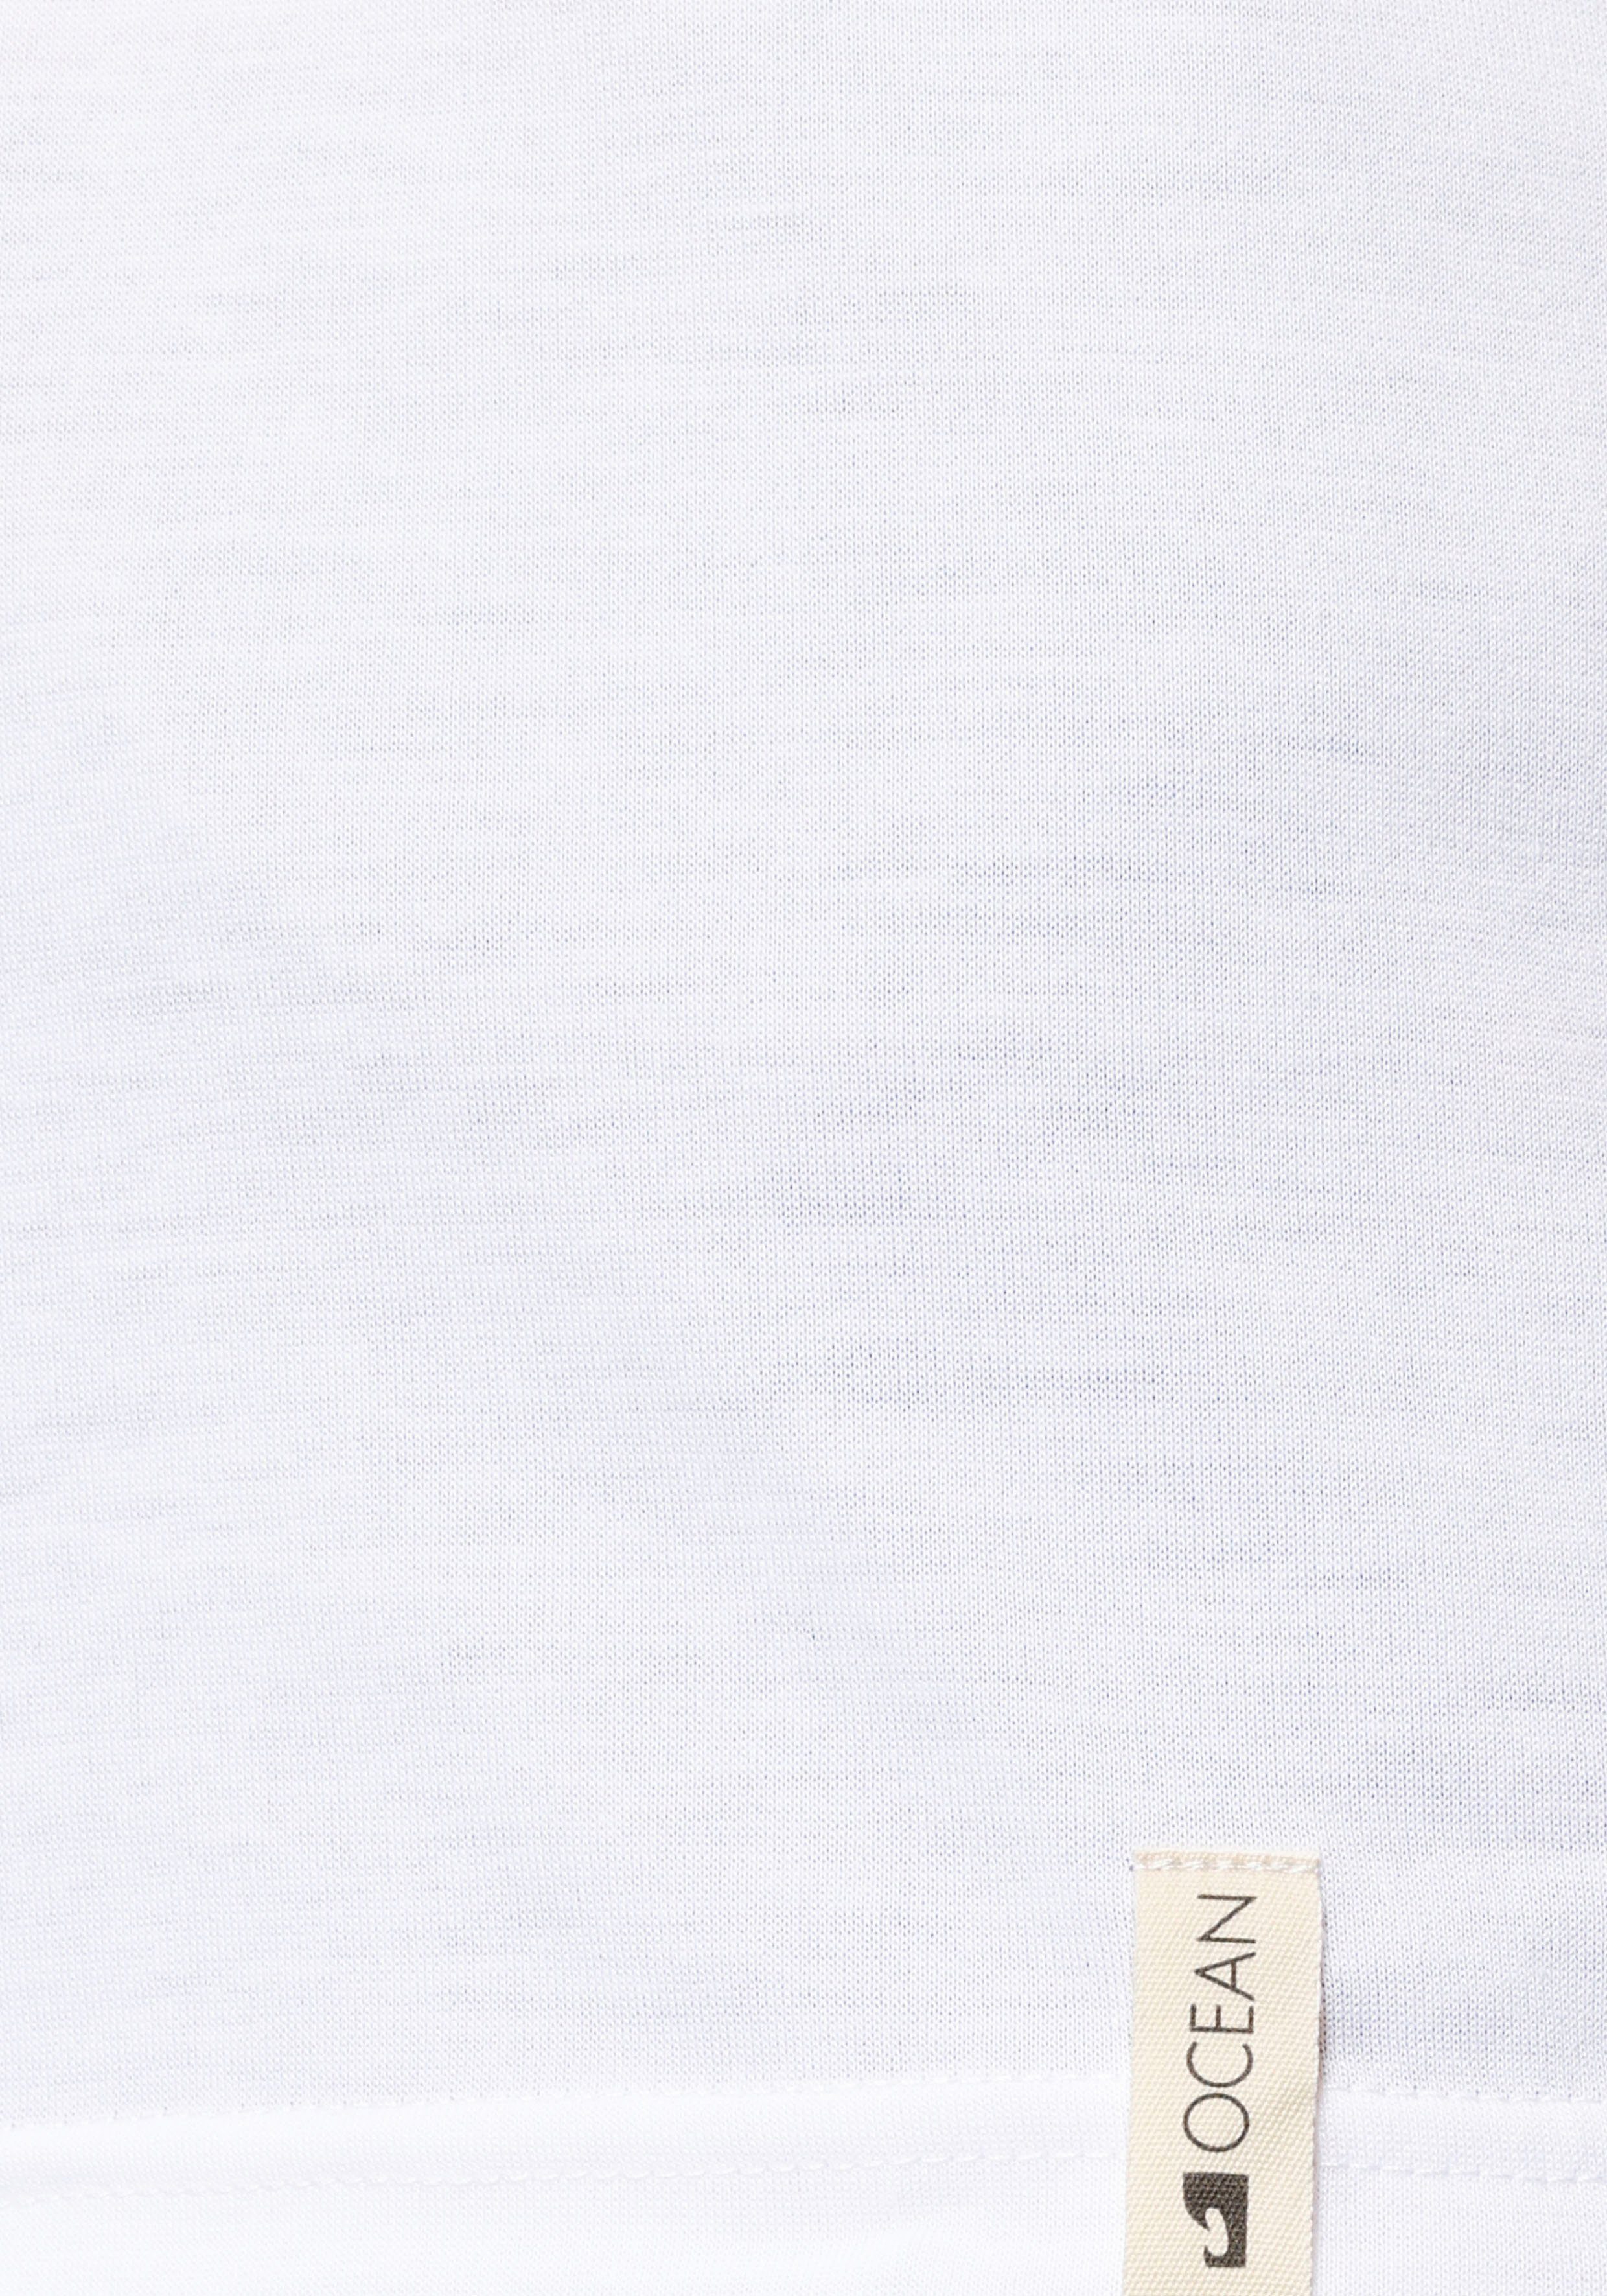 in 2er-Pack) T-Shirt Navy Ocean weiß Sportswear Viskose-Qualität (Packung,